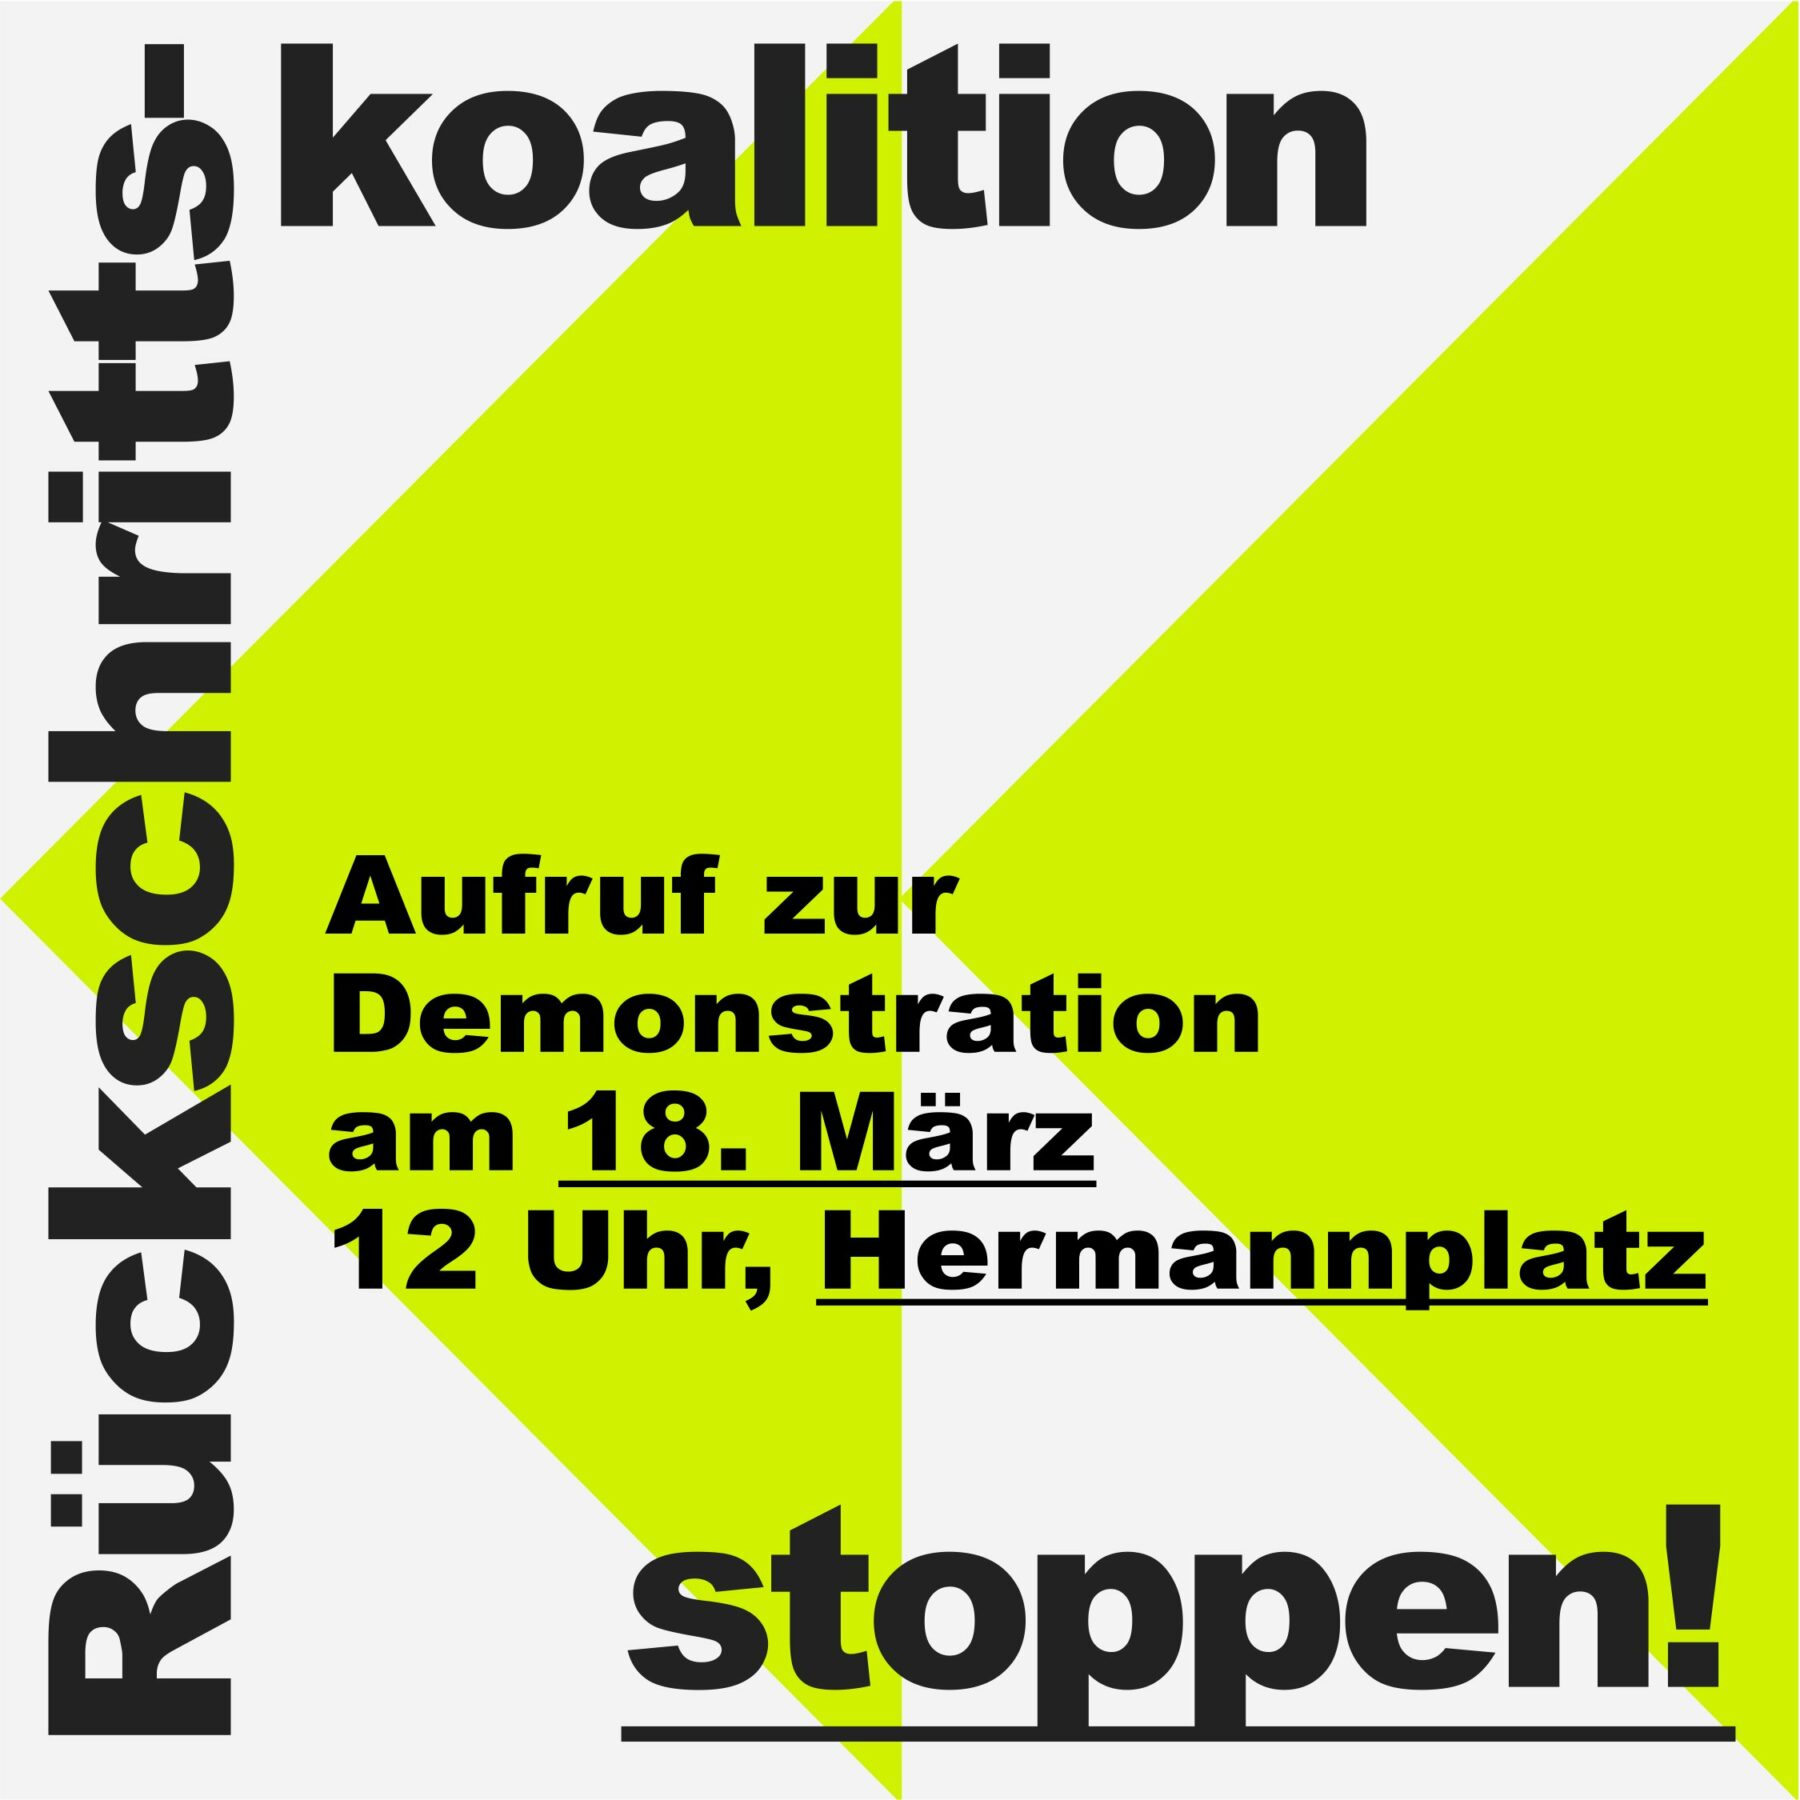 Kommt am Sonnabend, dem 18.3., um 12 Uhr zur Demo gegen die Betonkoalition! Unsere Bürger*innenInitiative ist vor Ort, weil wir einen Senat wollen, dem #Mobilitätswende und kein Weiterbau der #A100 wichtig sind. #Berlin braucht keine #Rückschrittskoalition.